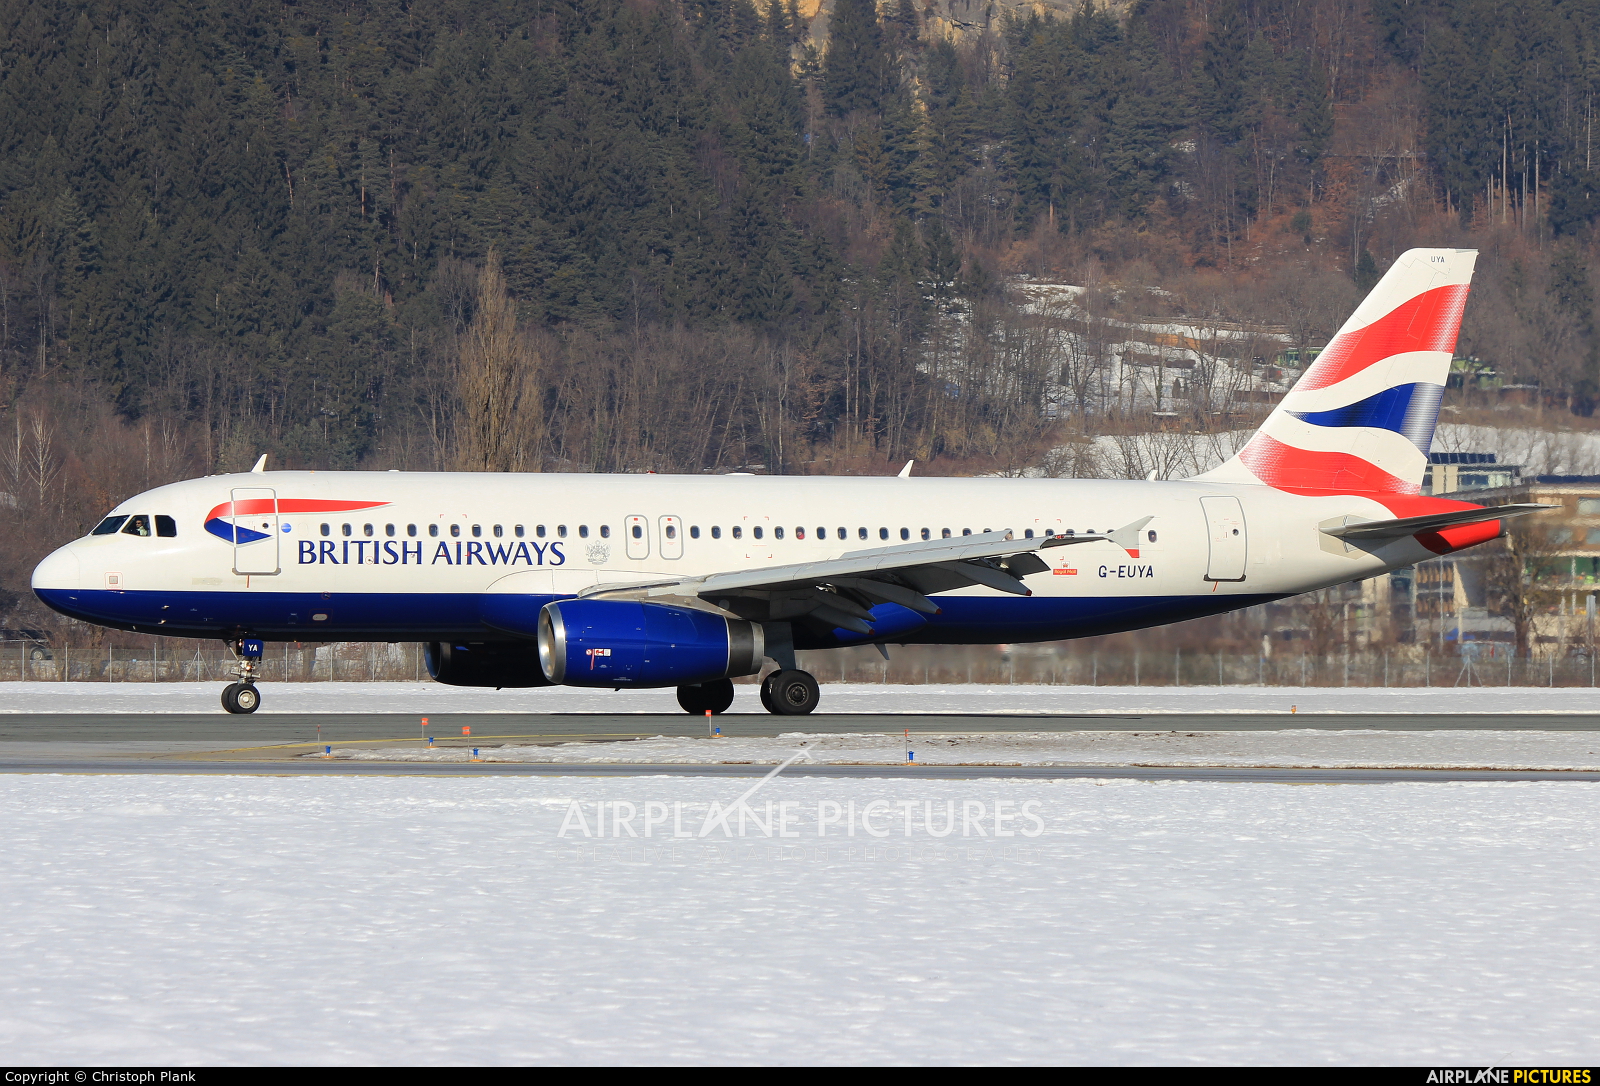 British Airways G-EUYA aircraft at Innsbruck